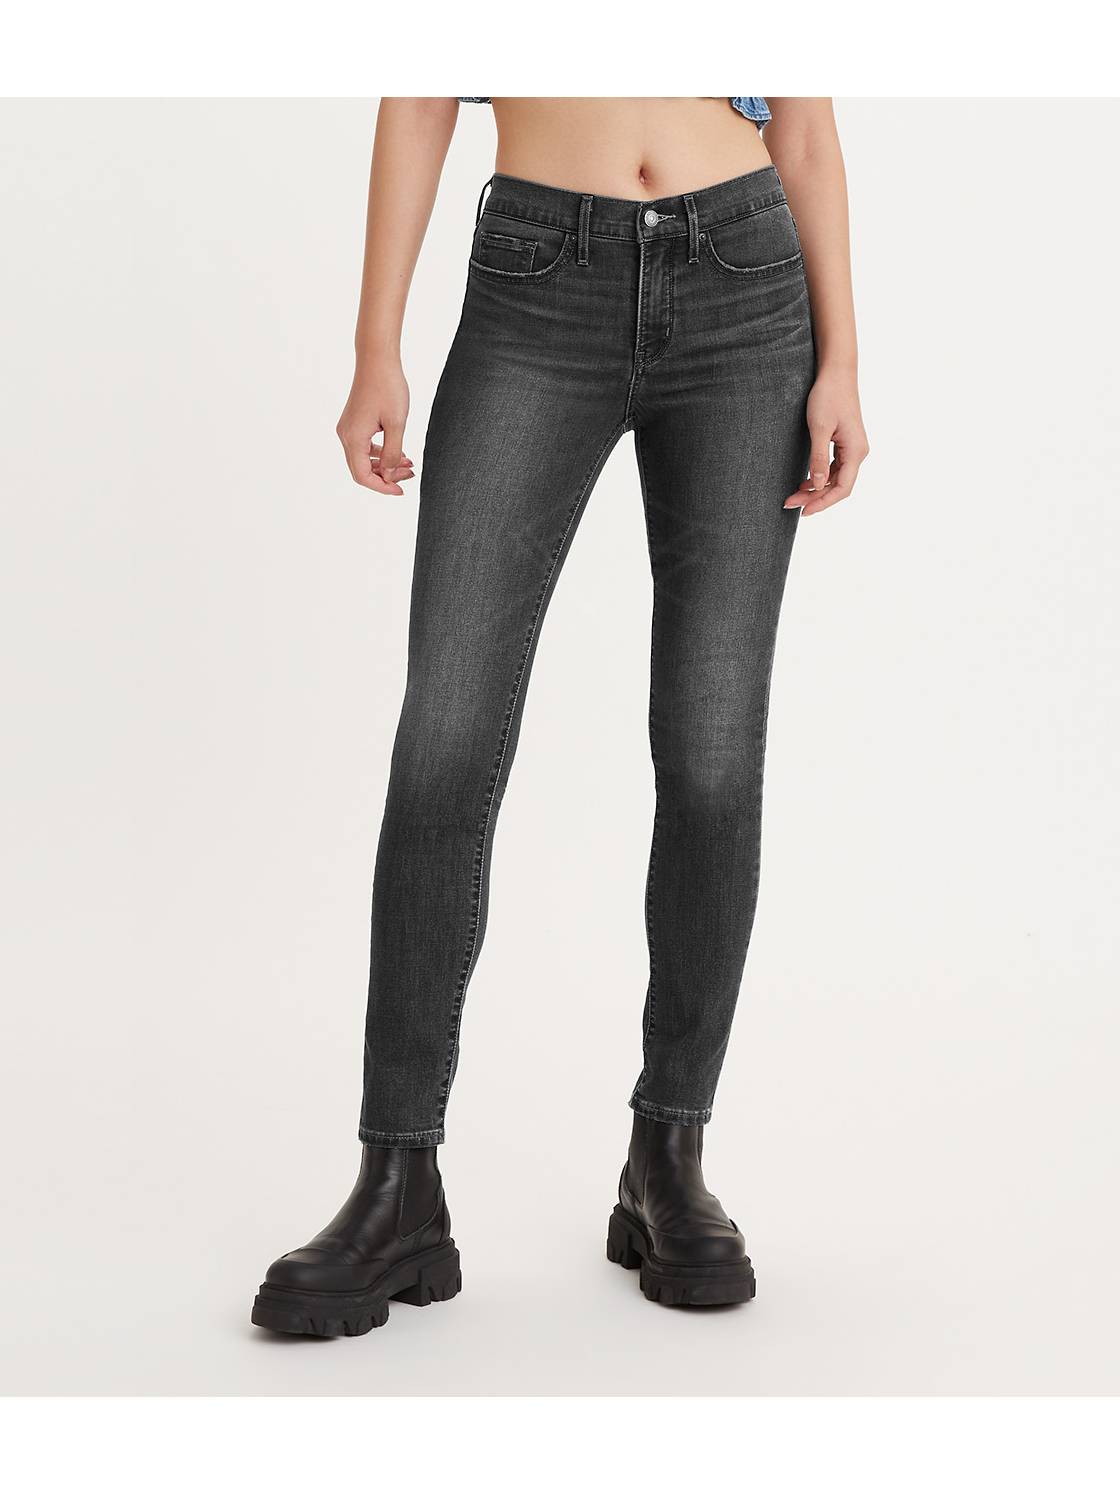 ritme aanvaarden familie Spijkerbroeken voor dames en dames jeans | Levi's® NL